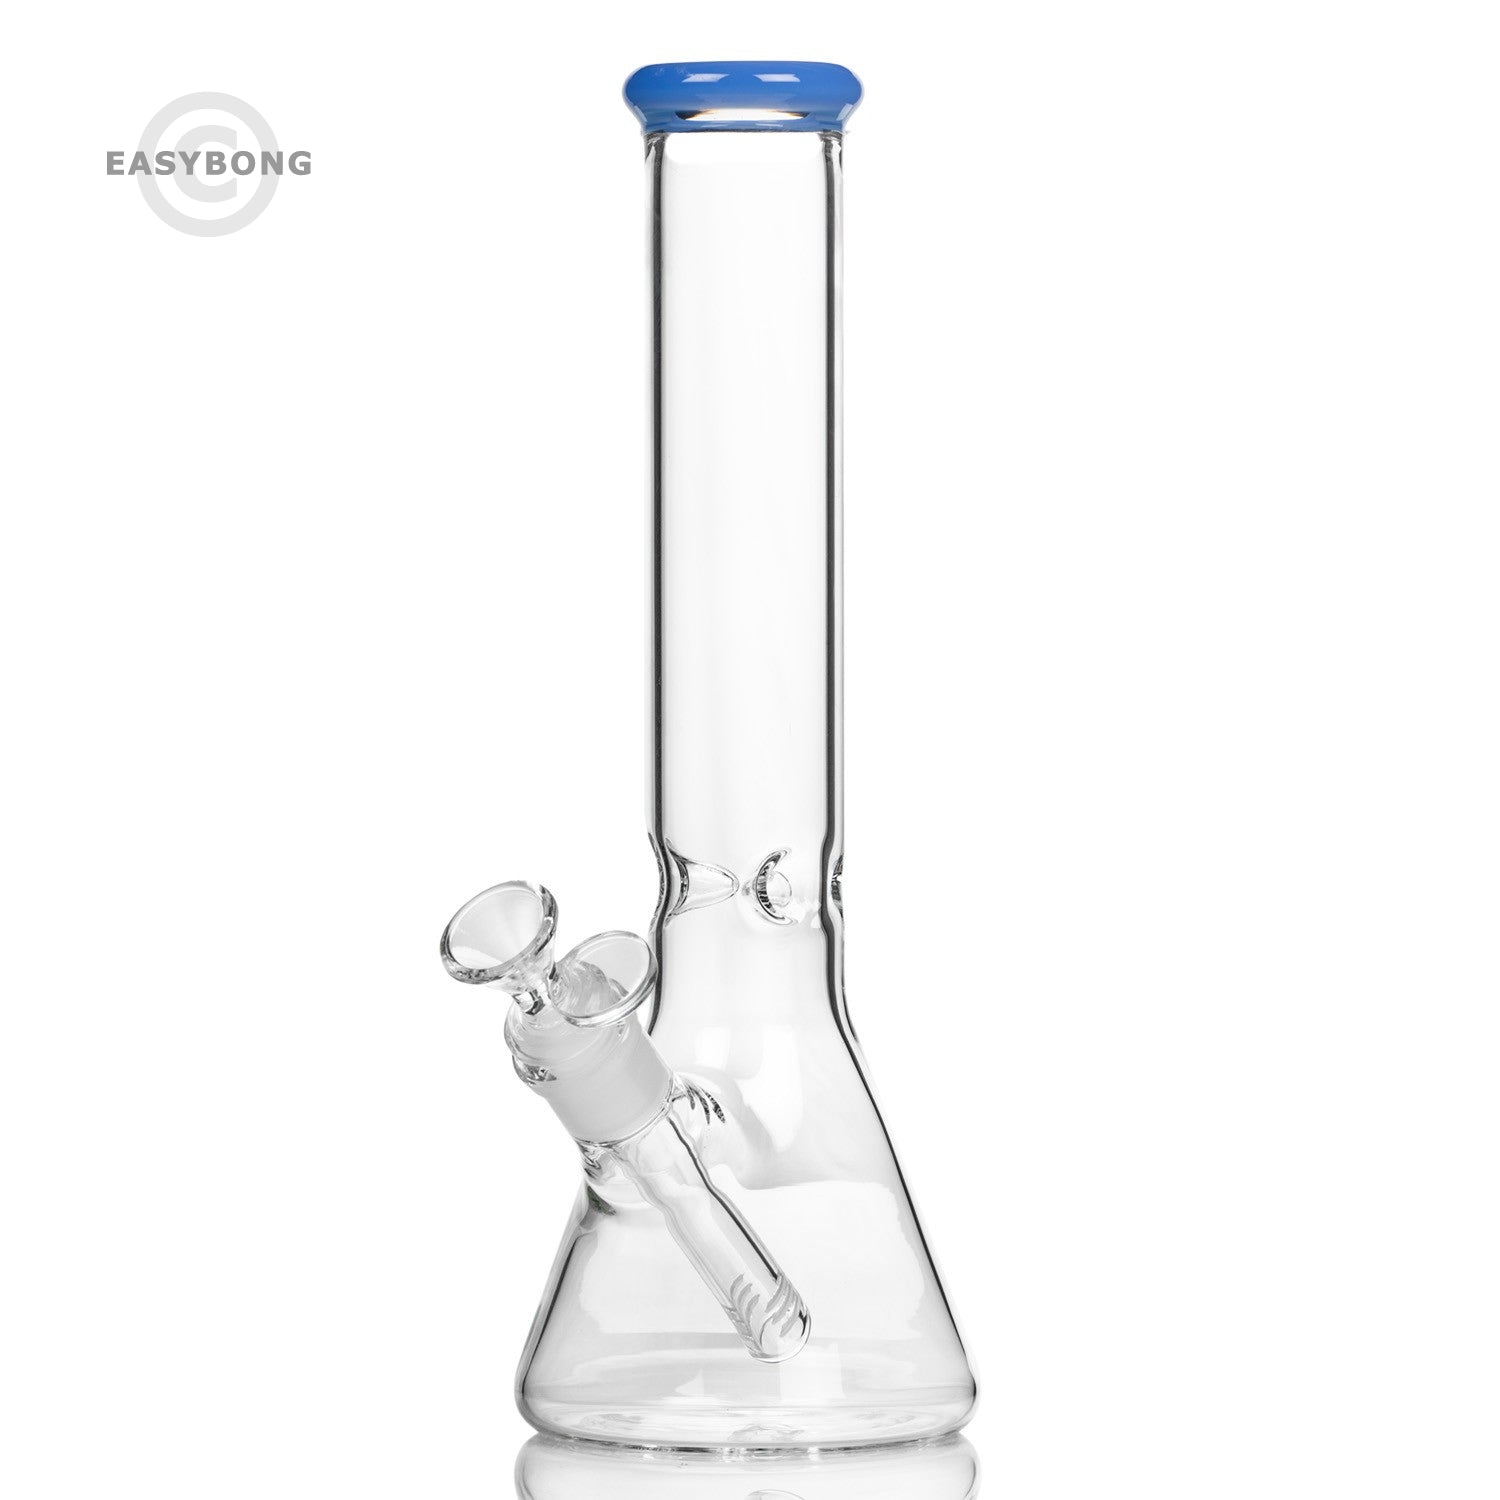 Cheap glass bong with beaker base online in Australia.